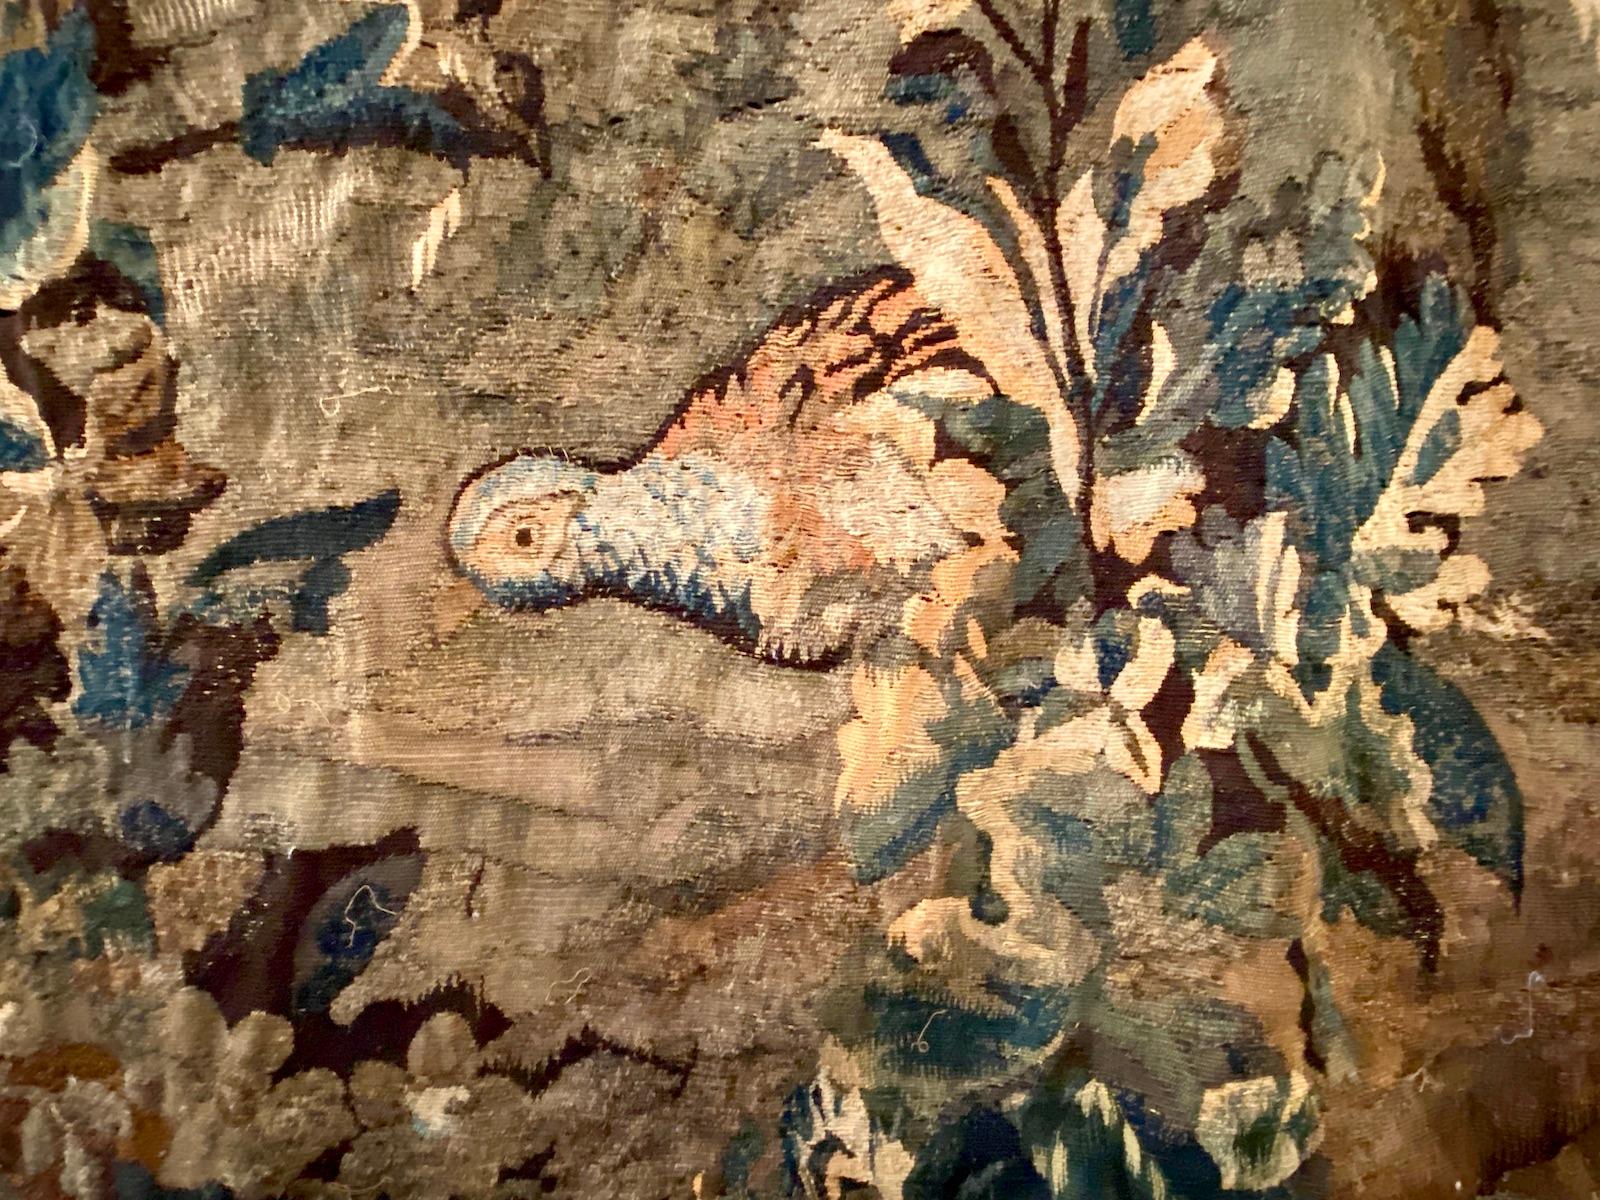 Ein antiker französischer Verdure-Wandteppich aus dem 18. Jahrhundert, der eine Stadt auf einem Hügel, Bäume und Tiere zeigt.

Abmessungen:
Höhe: 88